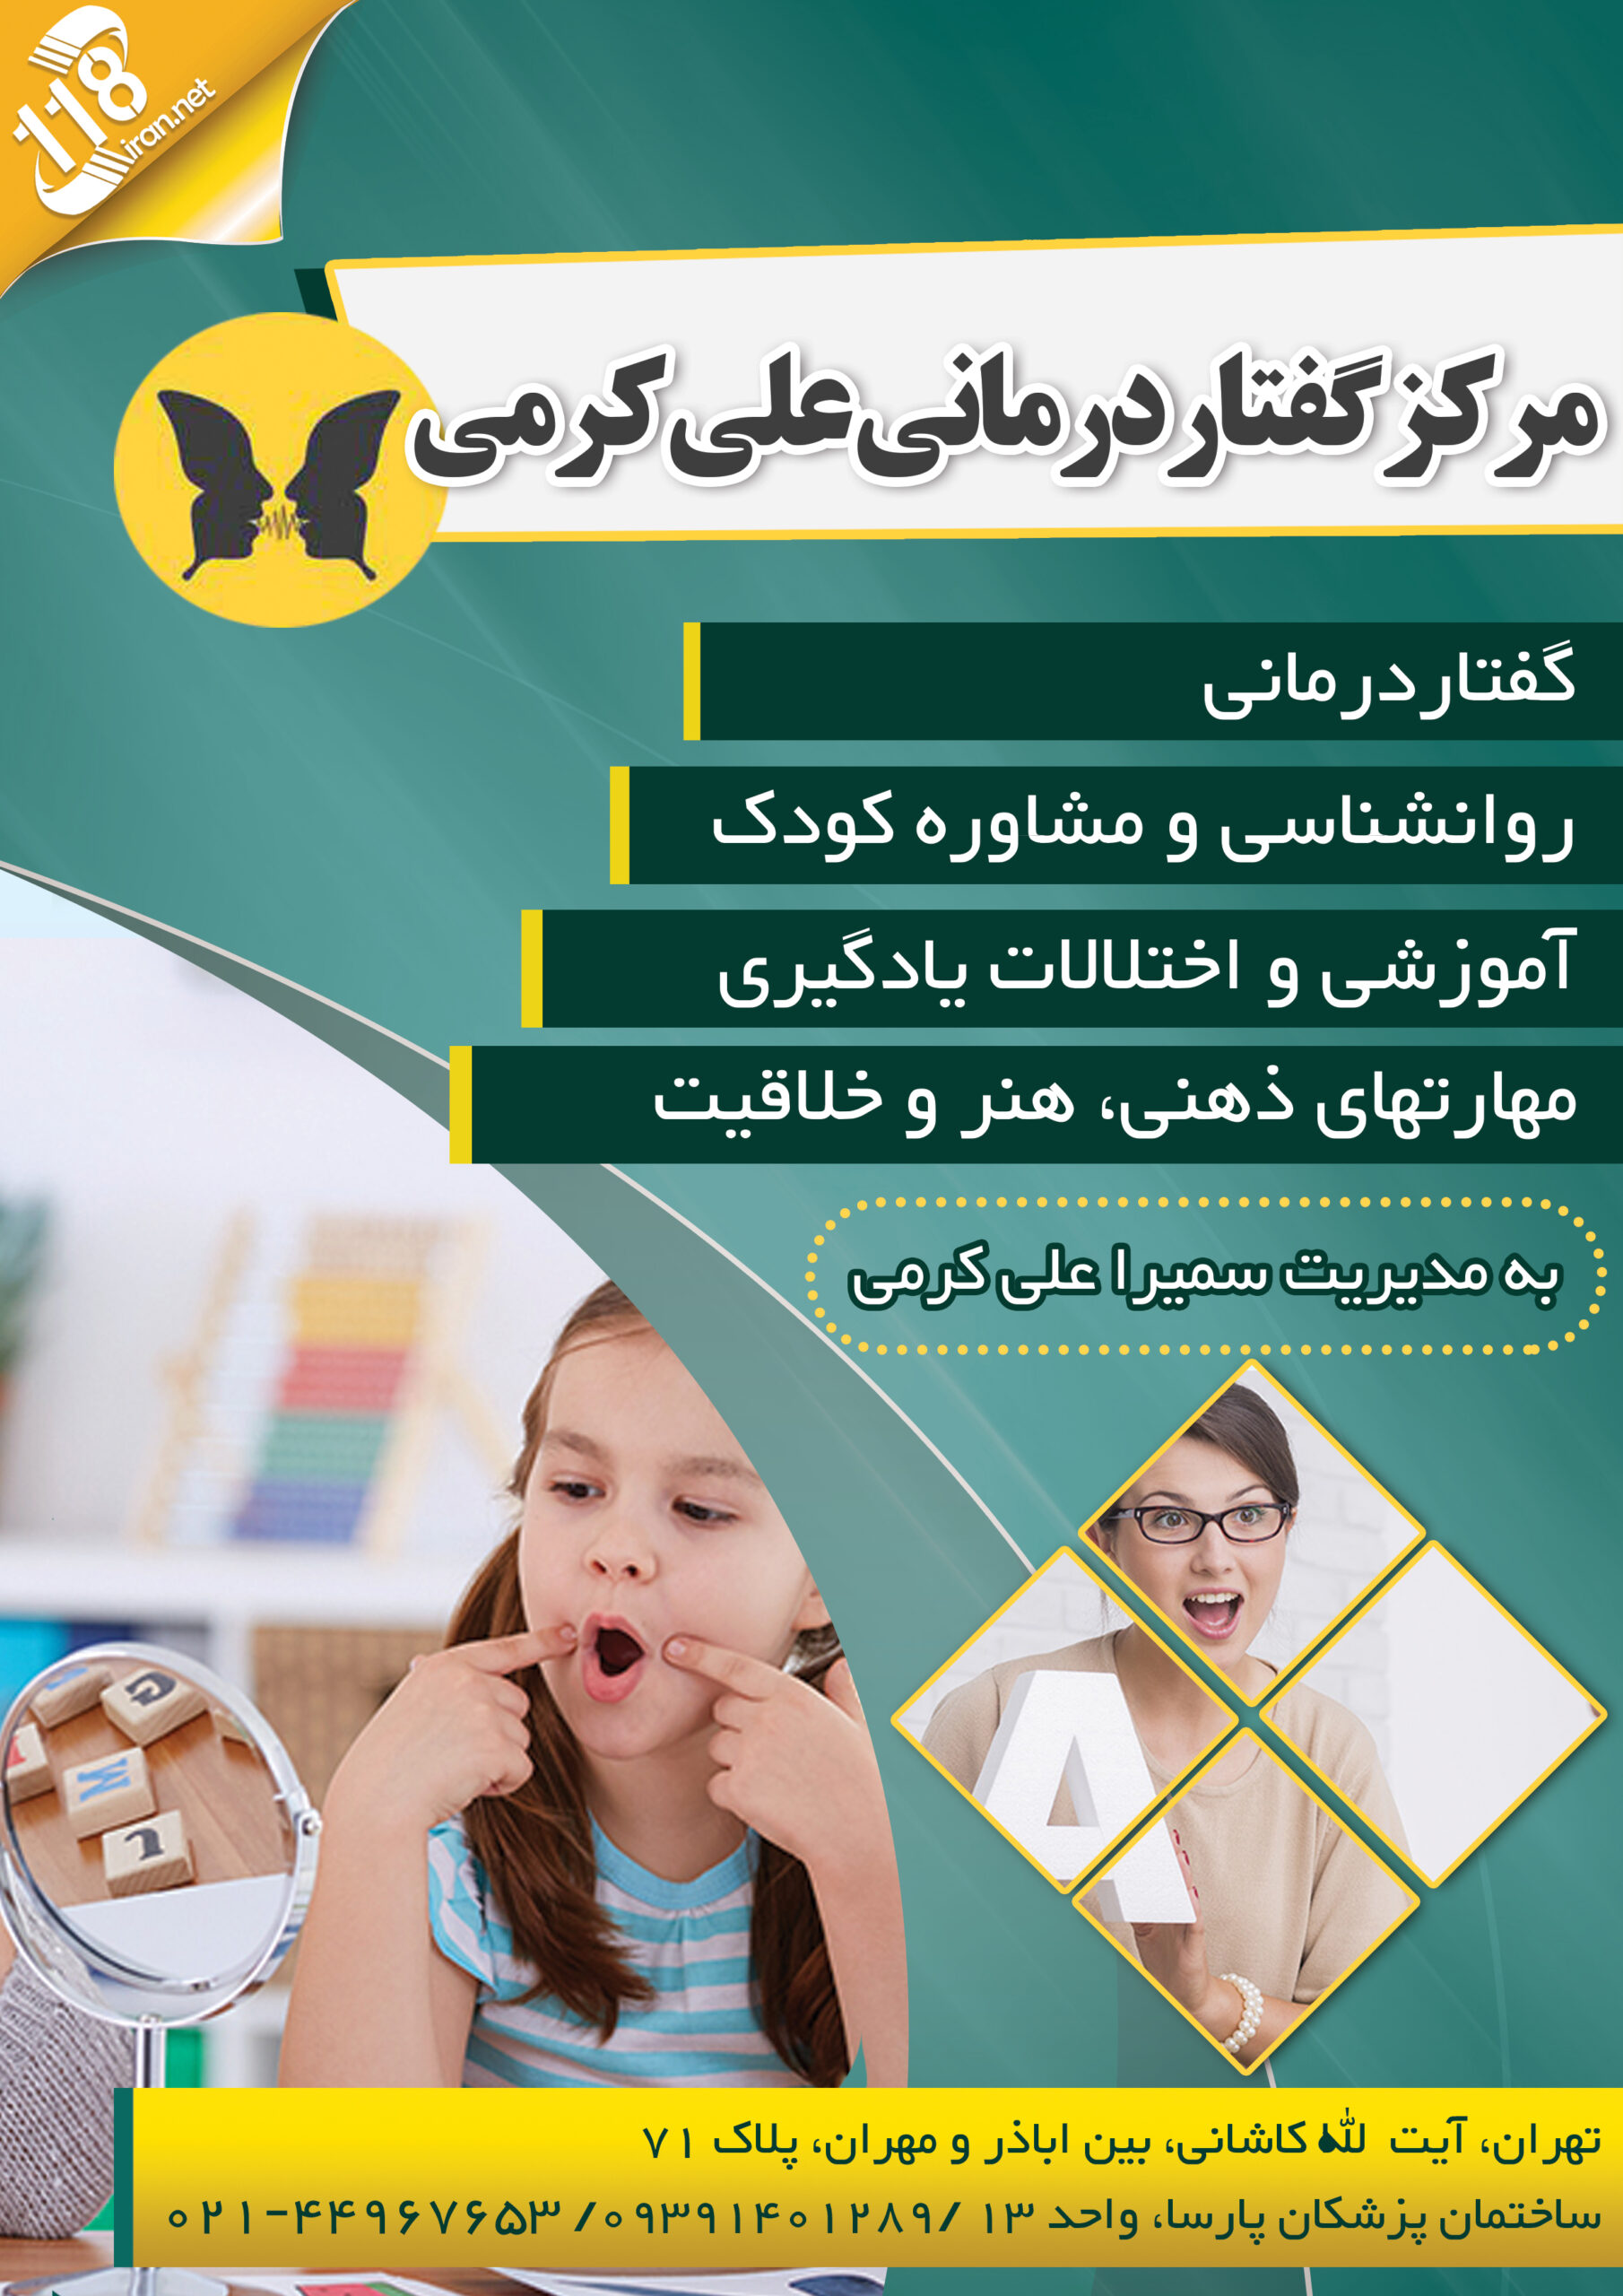  مرکز گفتار درمانی علی کرمی در تهران